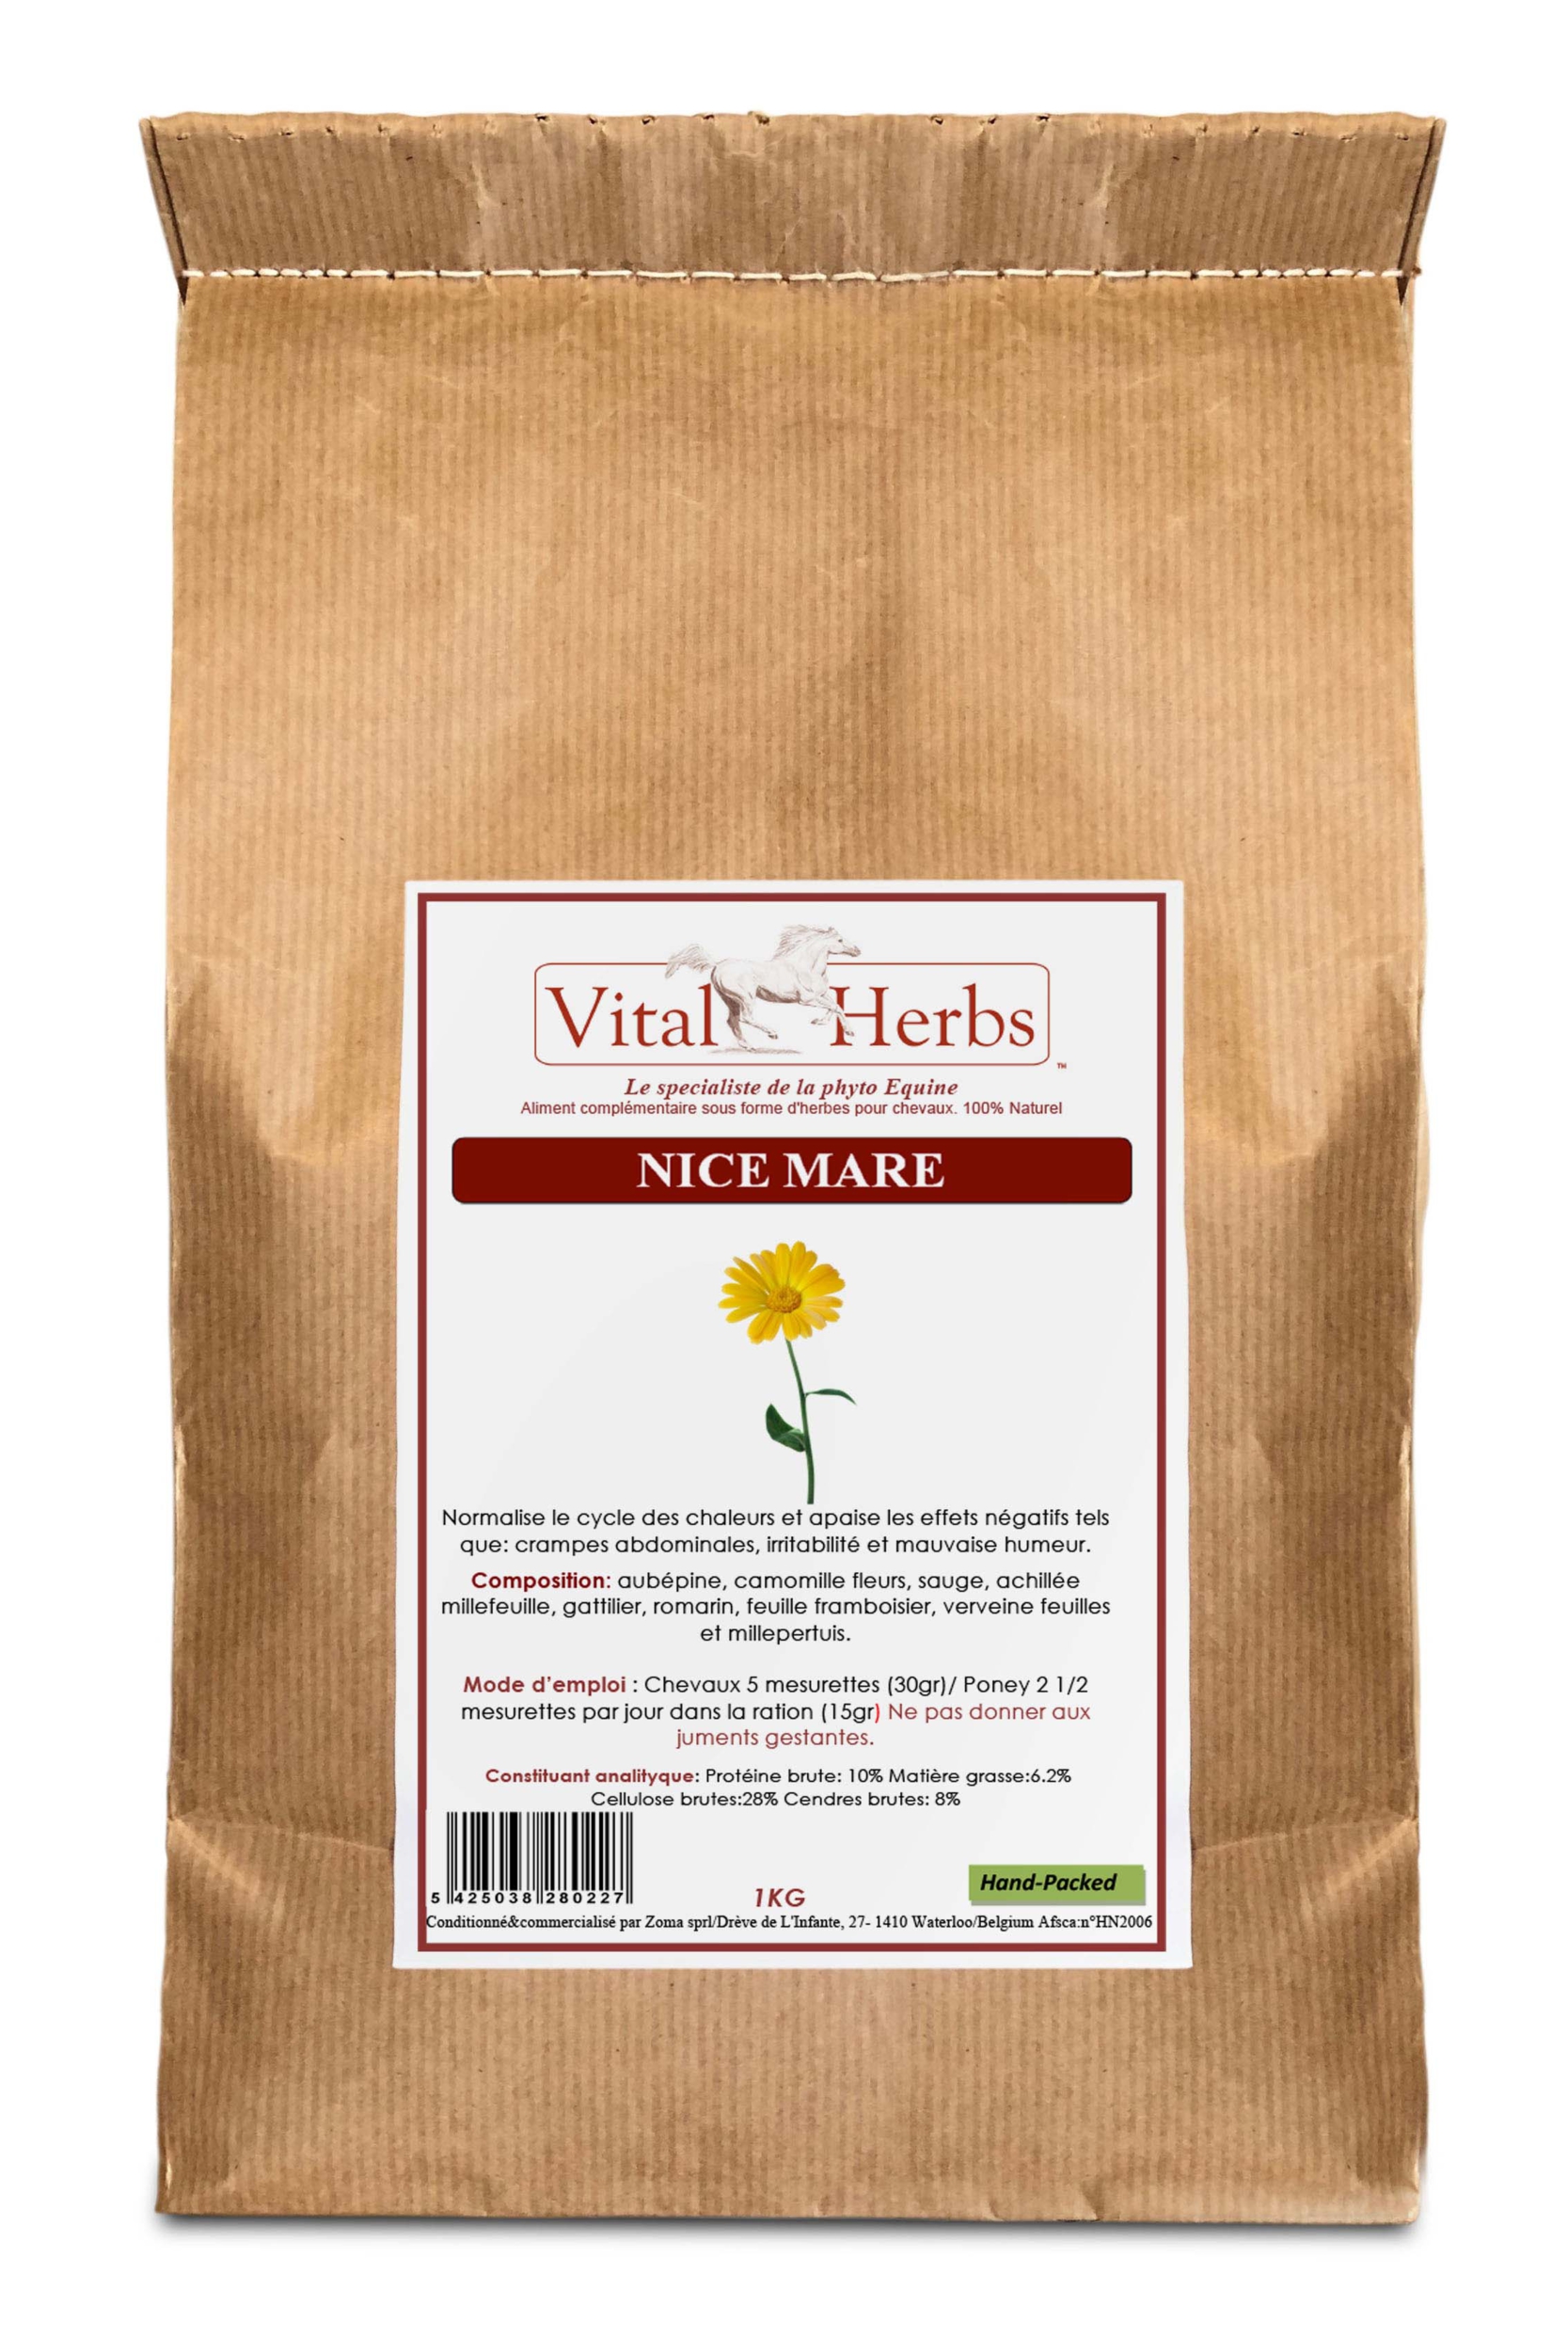 sac-1-kg-nice-mare-vital-herbs-vitalherbs